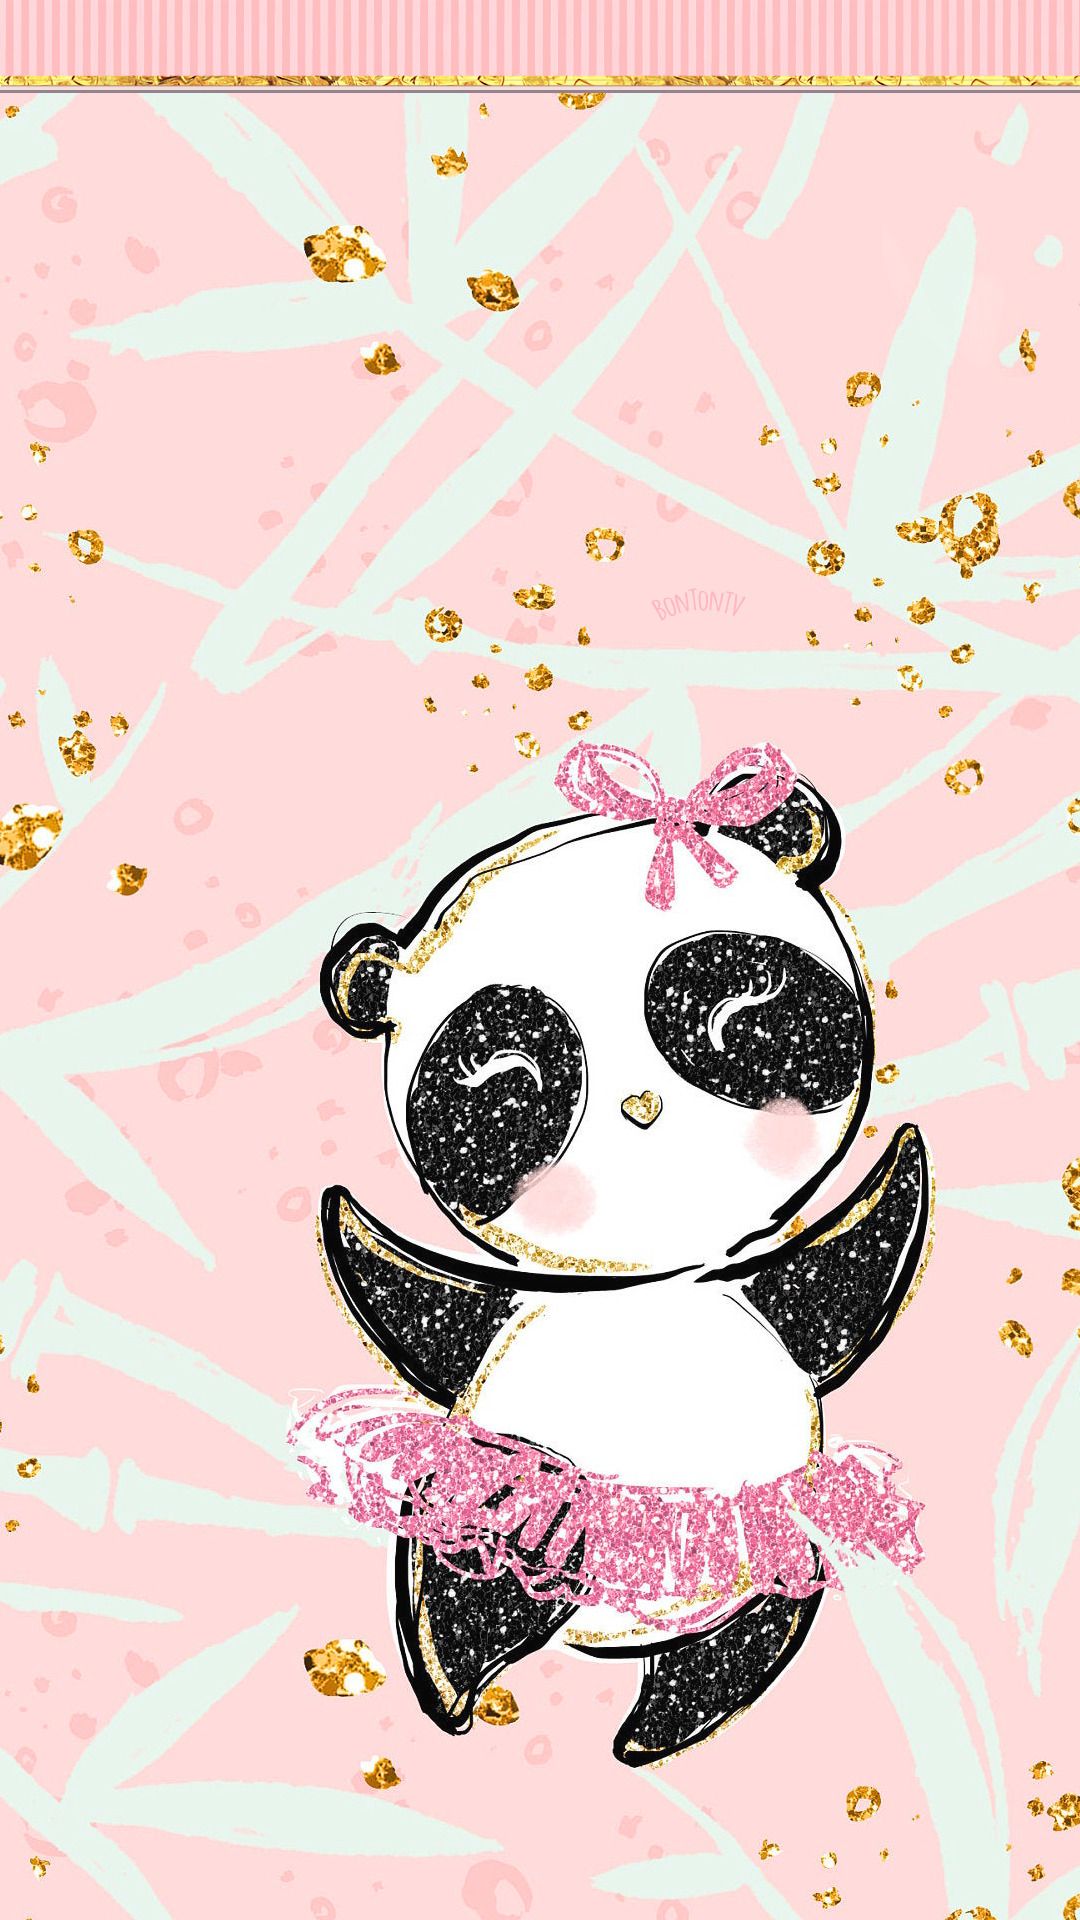 Cute Panda Wallpaper Images - Free Download on Freepik